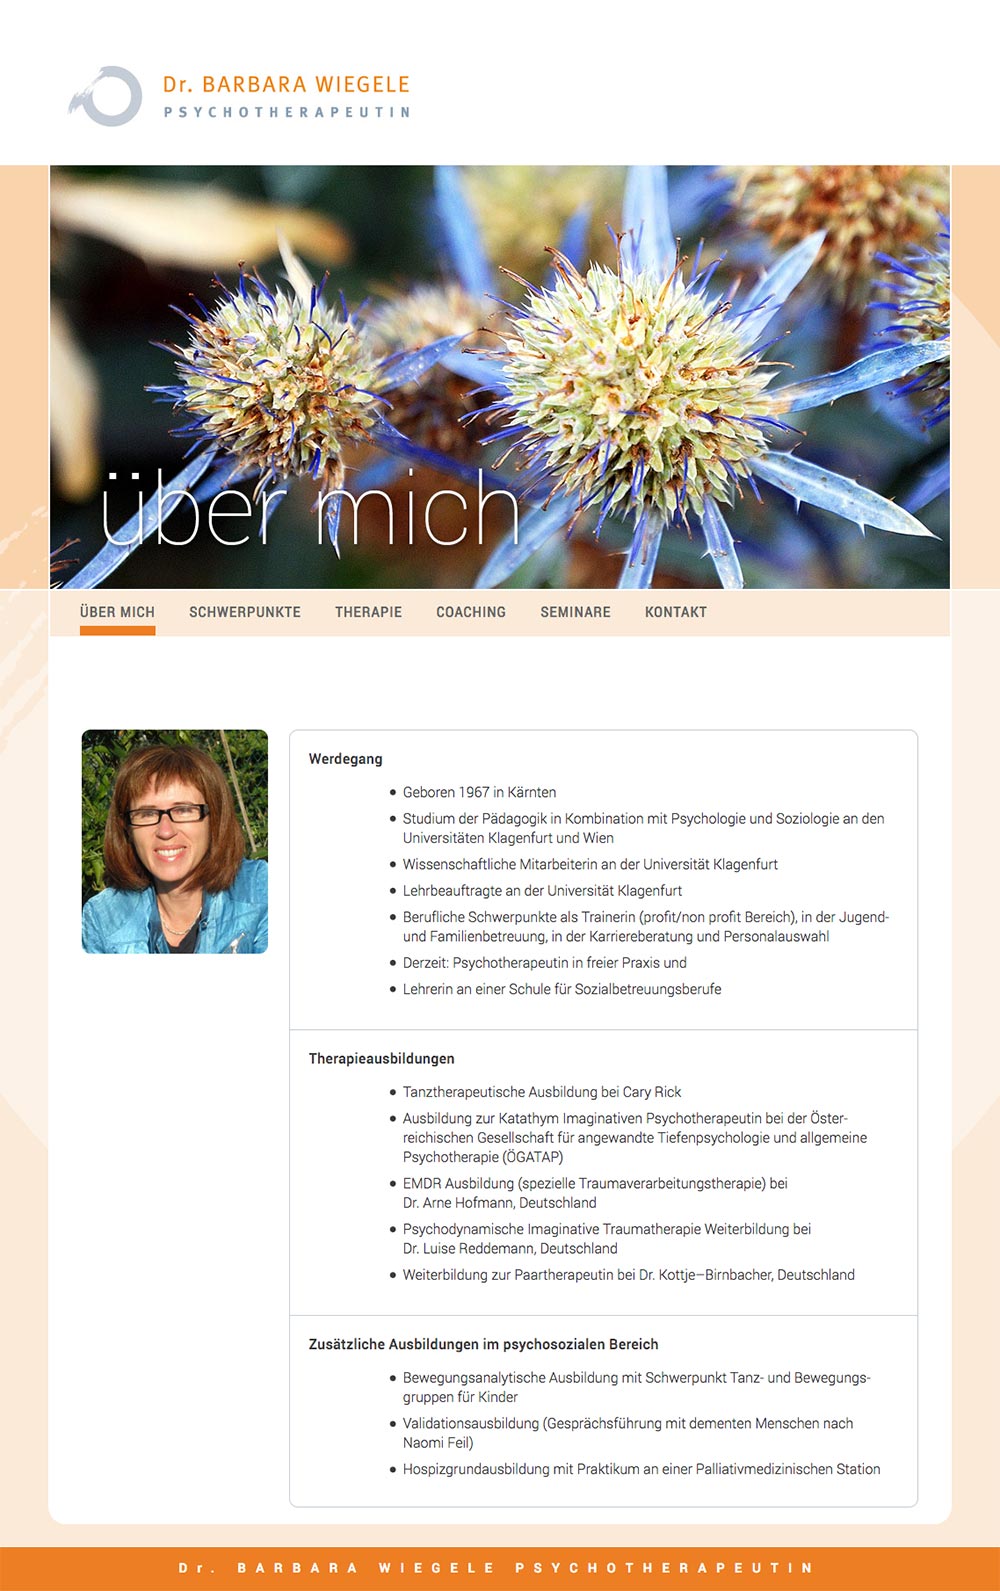 Website – Über mich